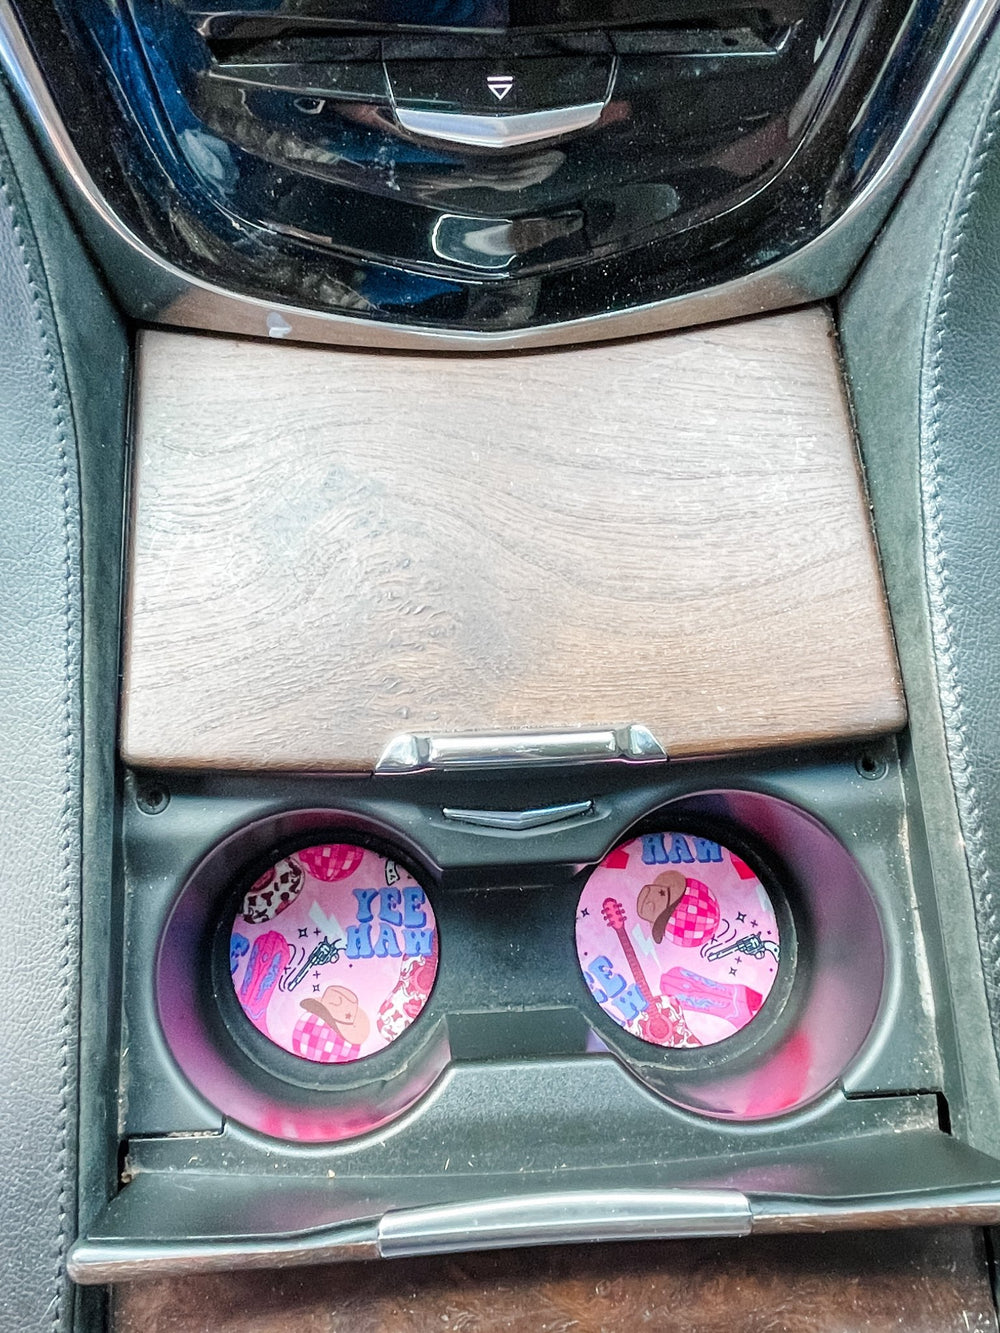 YeeHaw Neoprene Car Coasters - Drink Handlers